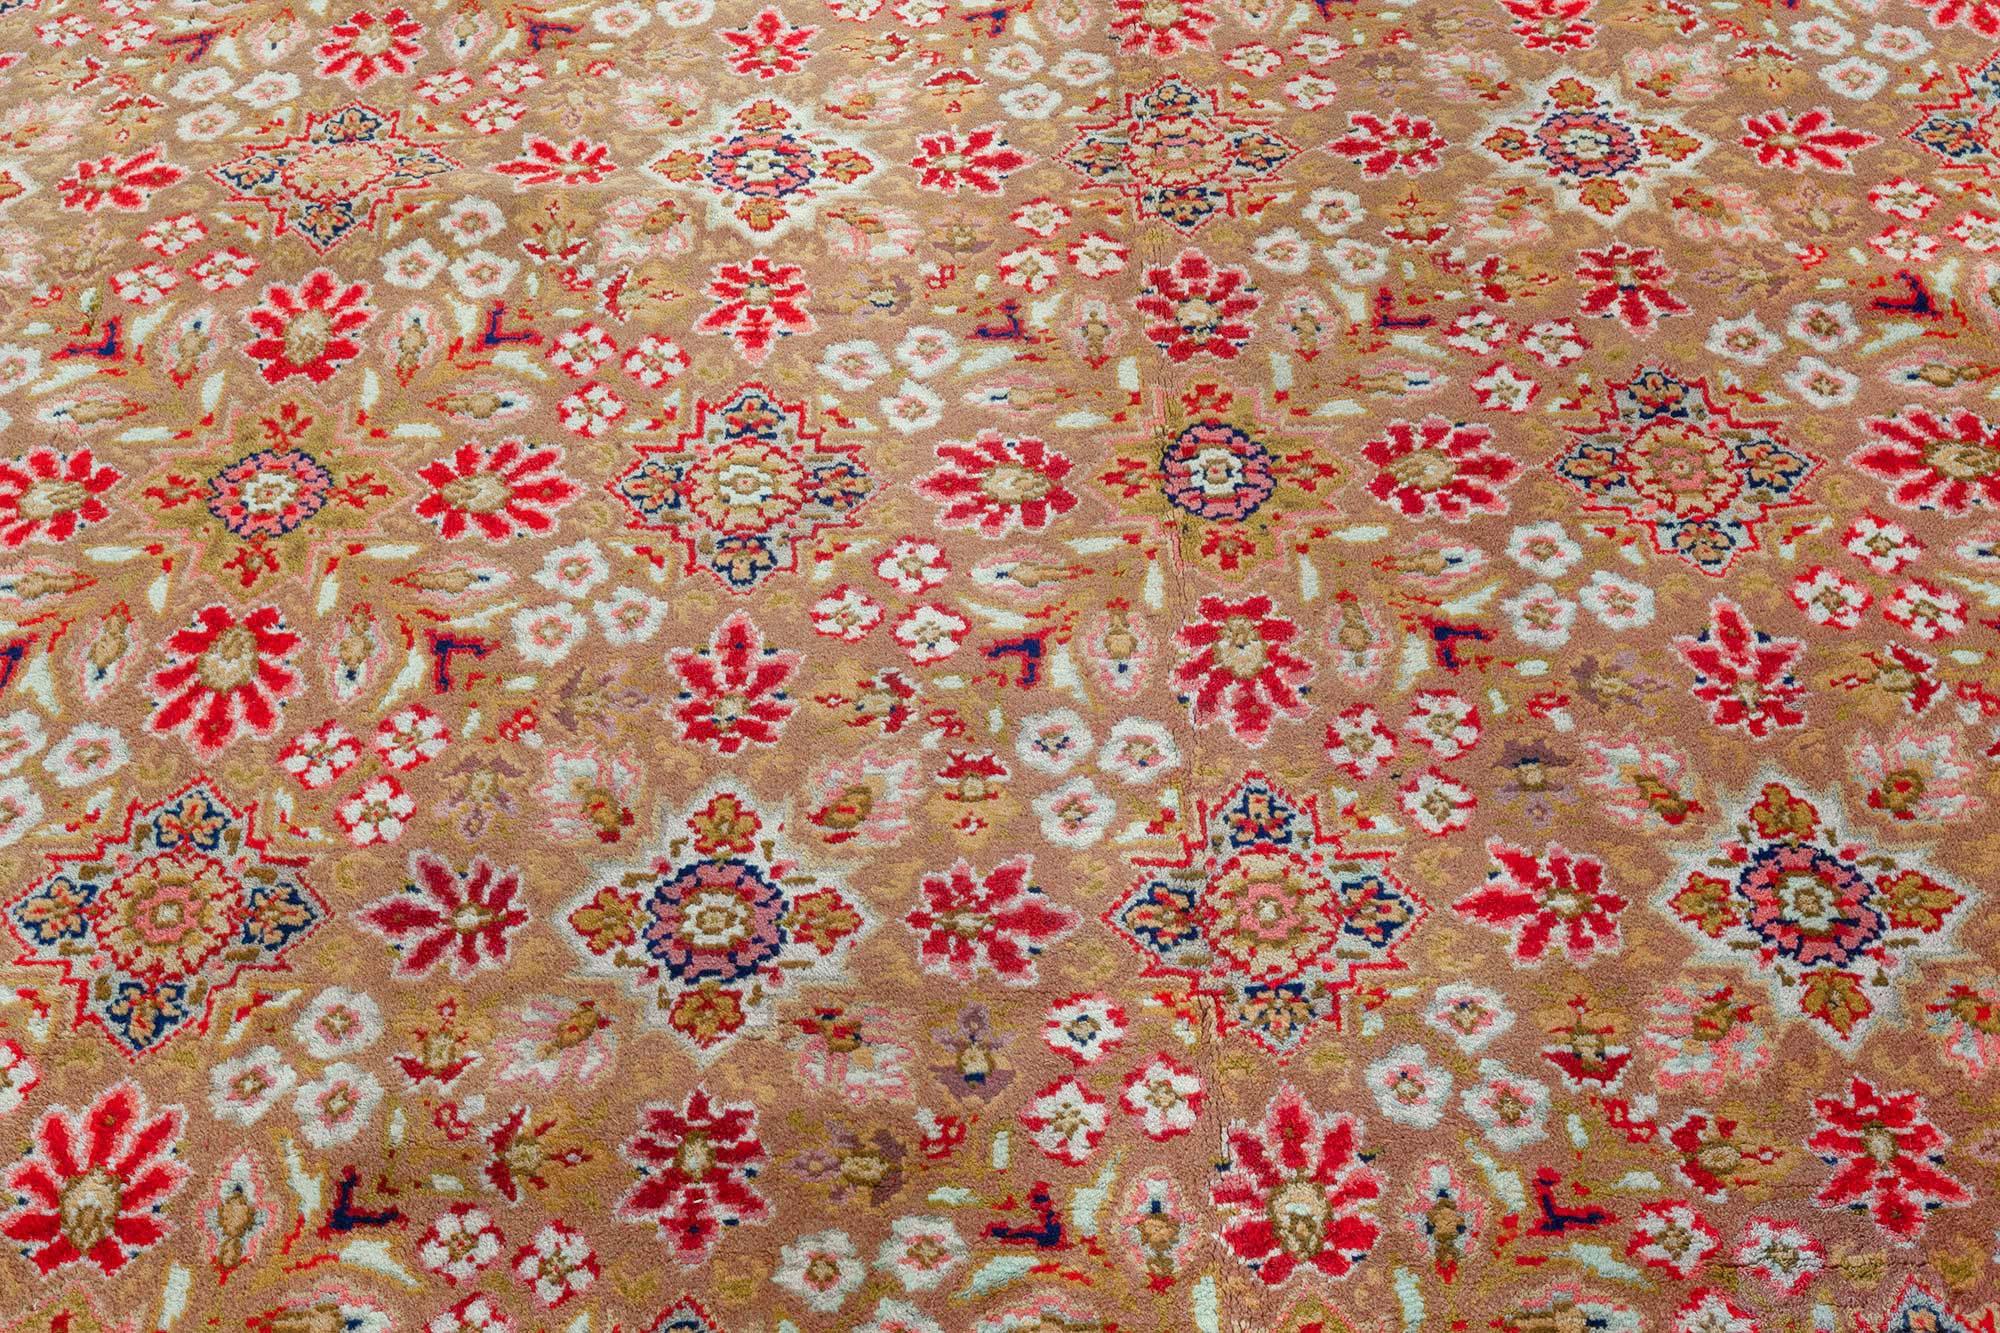 Antique English Wilton rug (Size Adjusted)
Size: 12'8